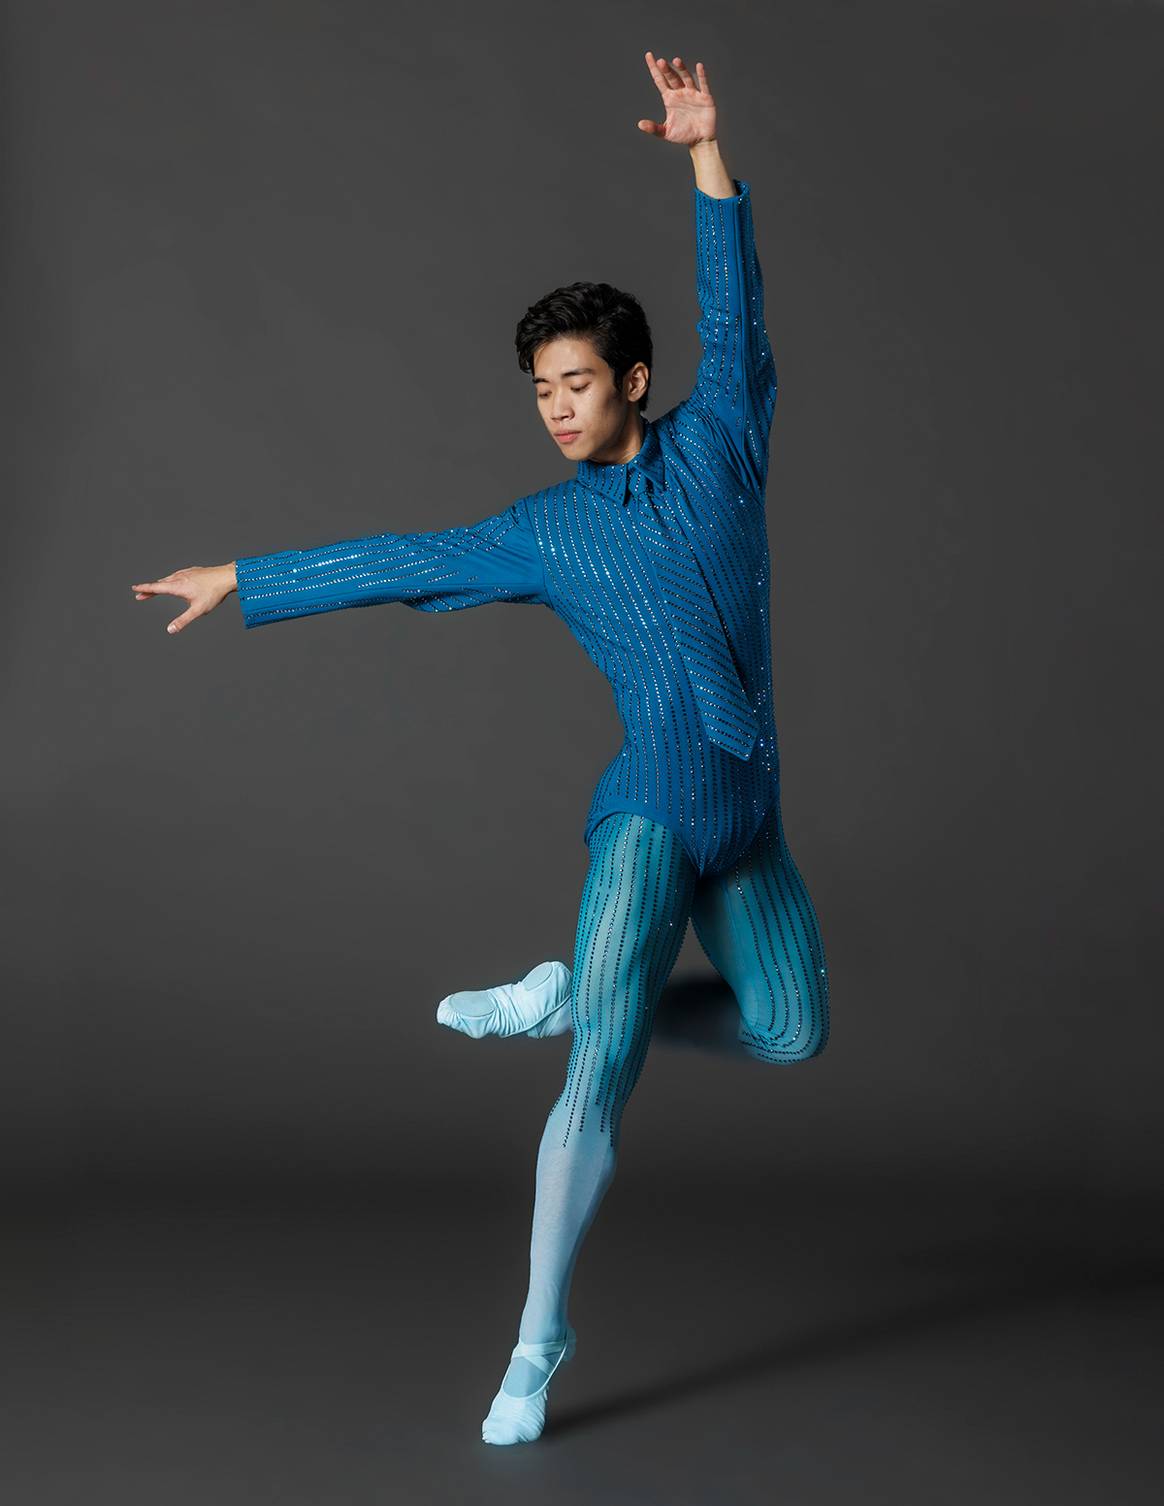 Photo Credits: Diseños de Palomo Spain para la 10ª edición de la Fall Fashion Gala del New York City Ballet. Palomo Spain, fotografía de cortesía.